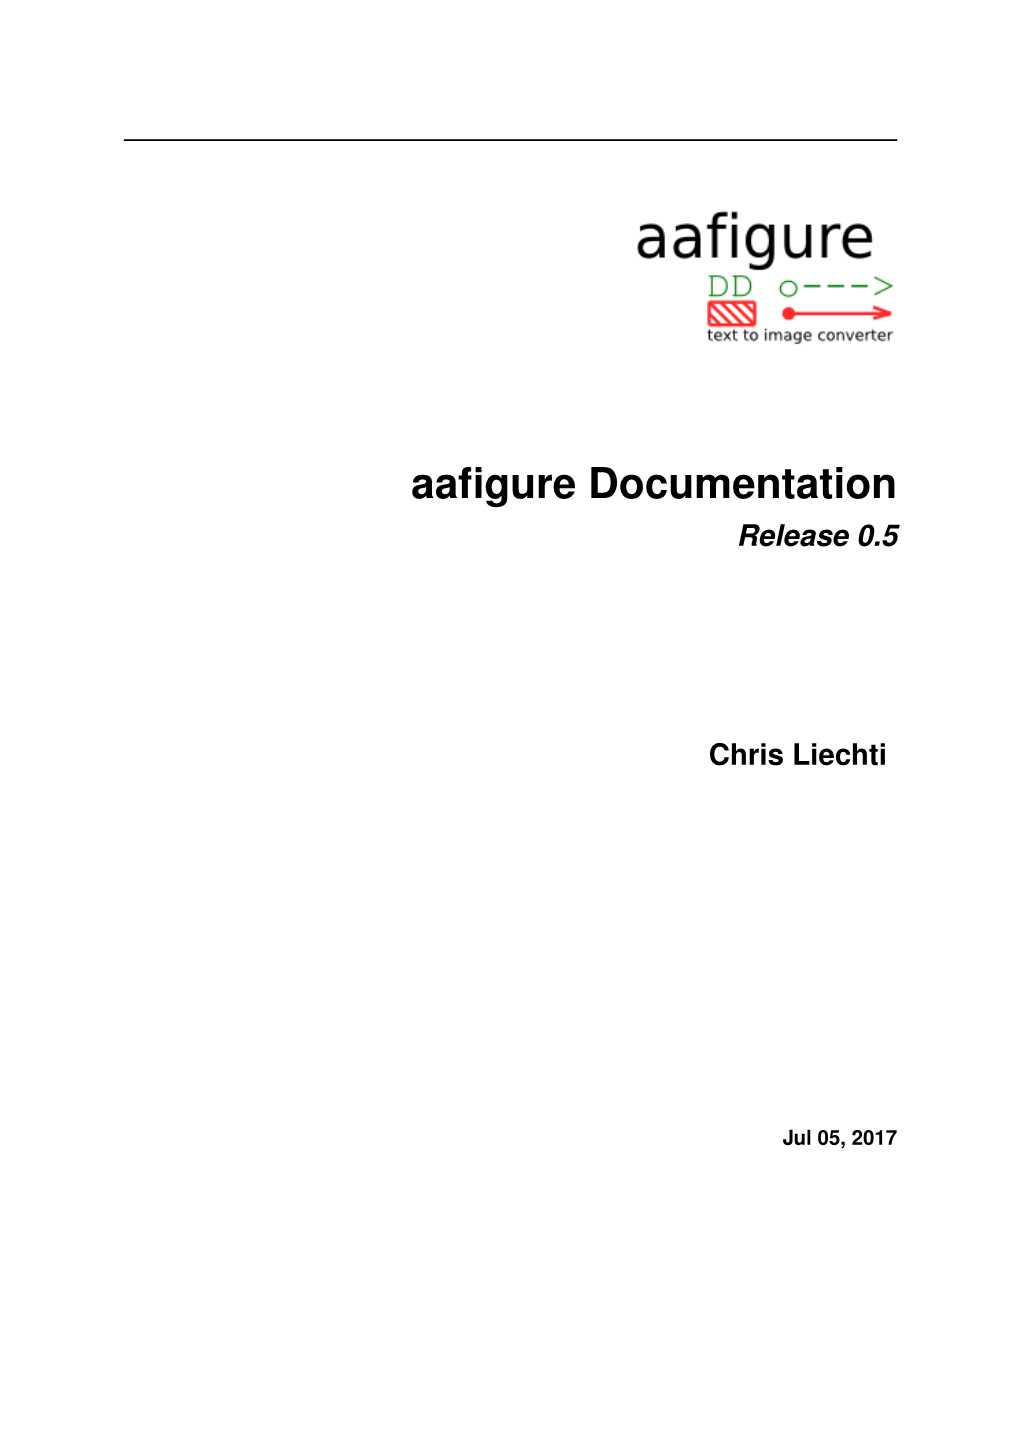 Aafigure Documentation